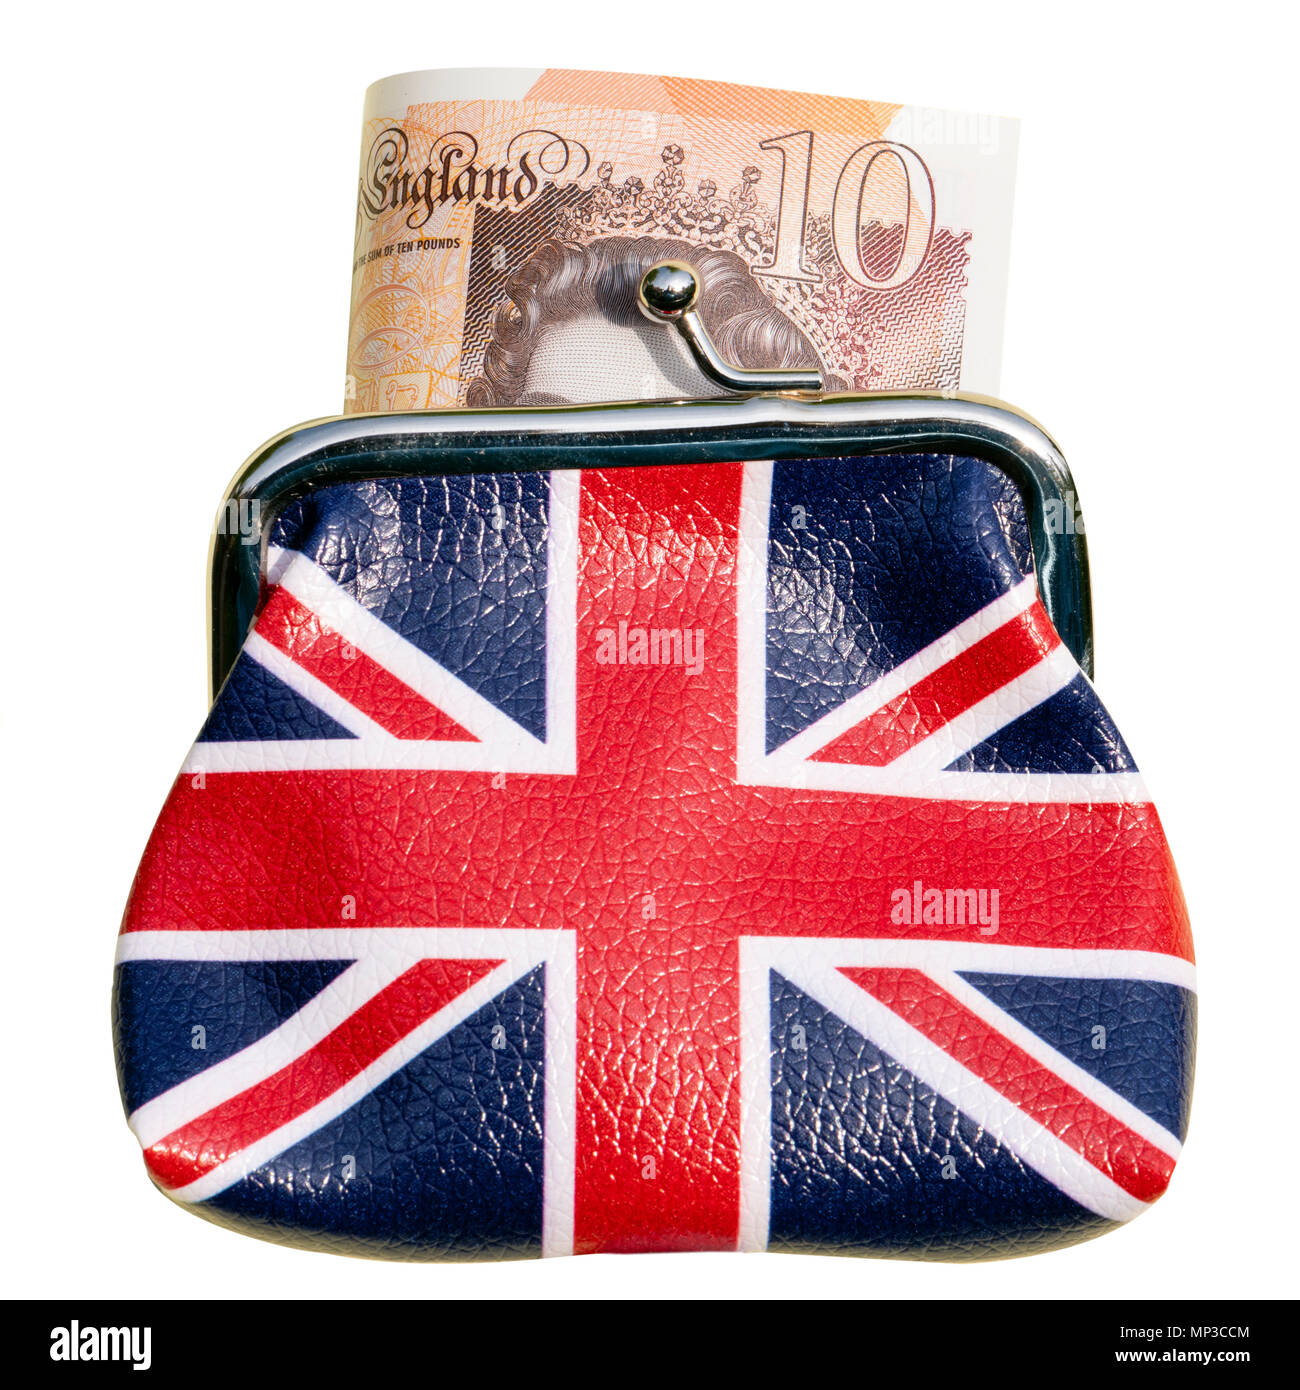 Unione Jack portamonete con un £10 nota, isolato o ritagliata su uno sfondo bianco. Foto Stock